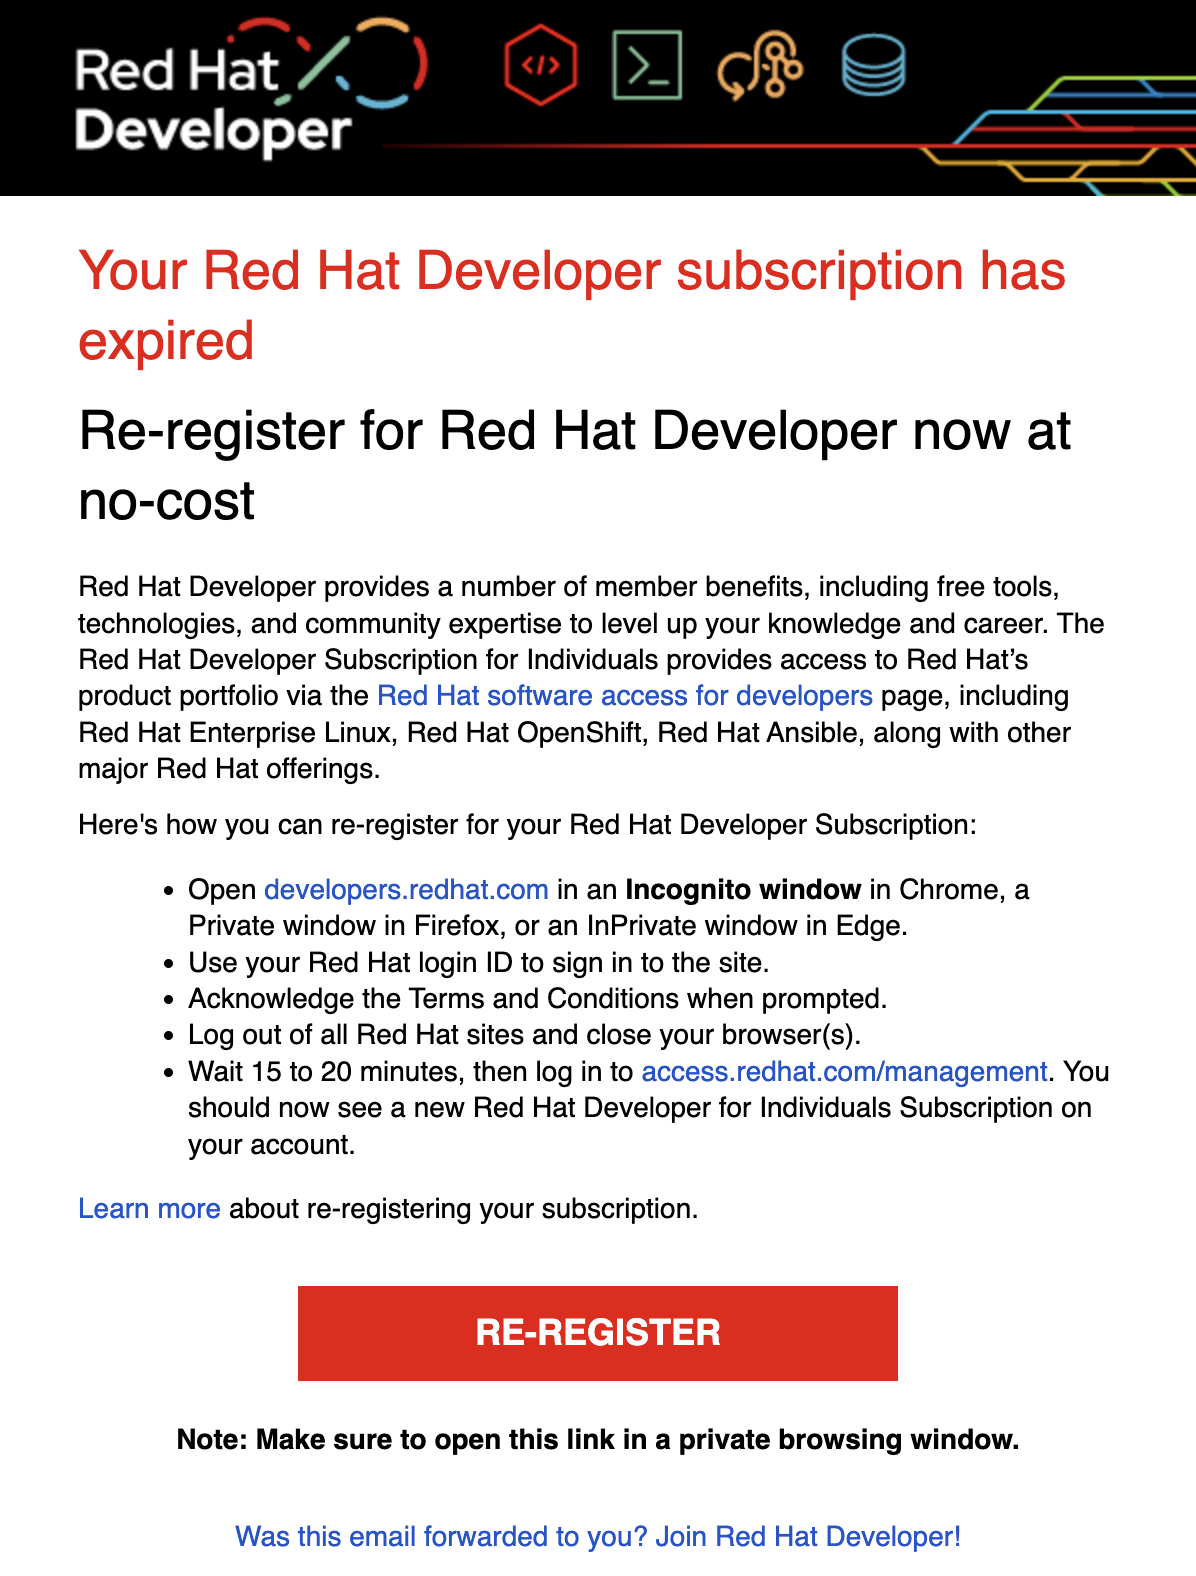 Red Hat Developer Re-Register